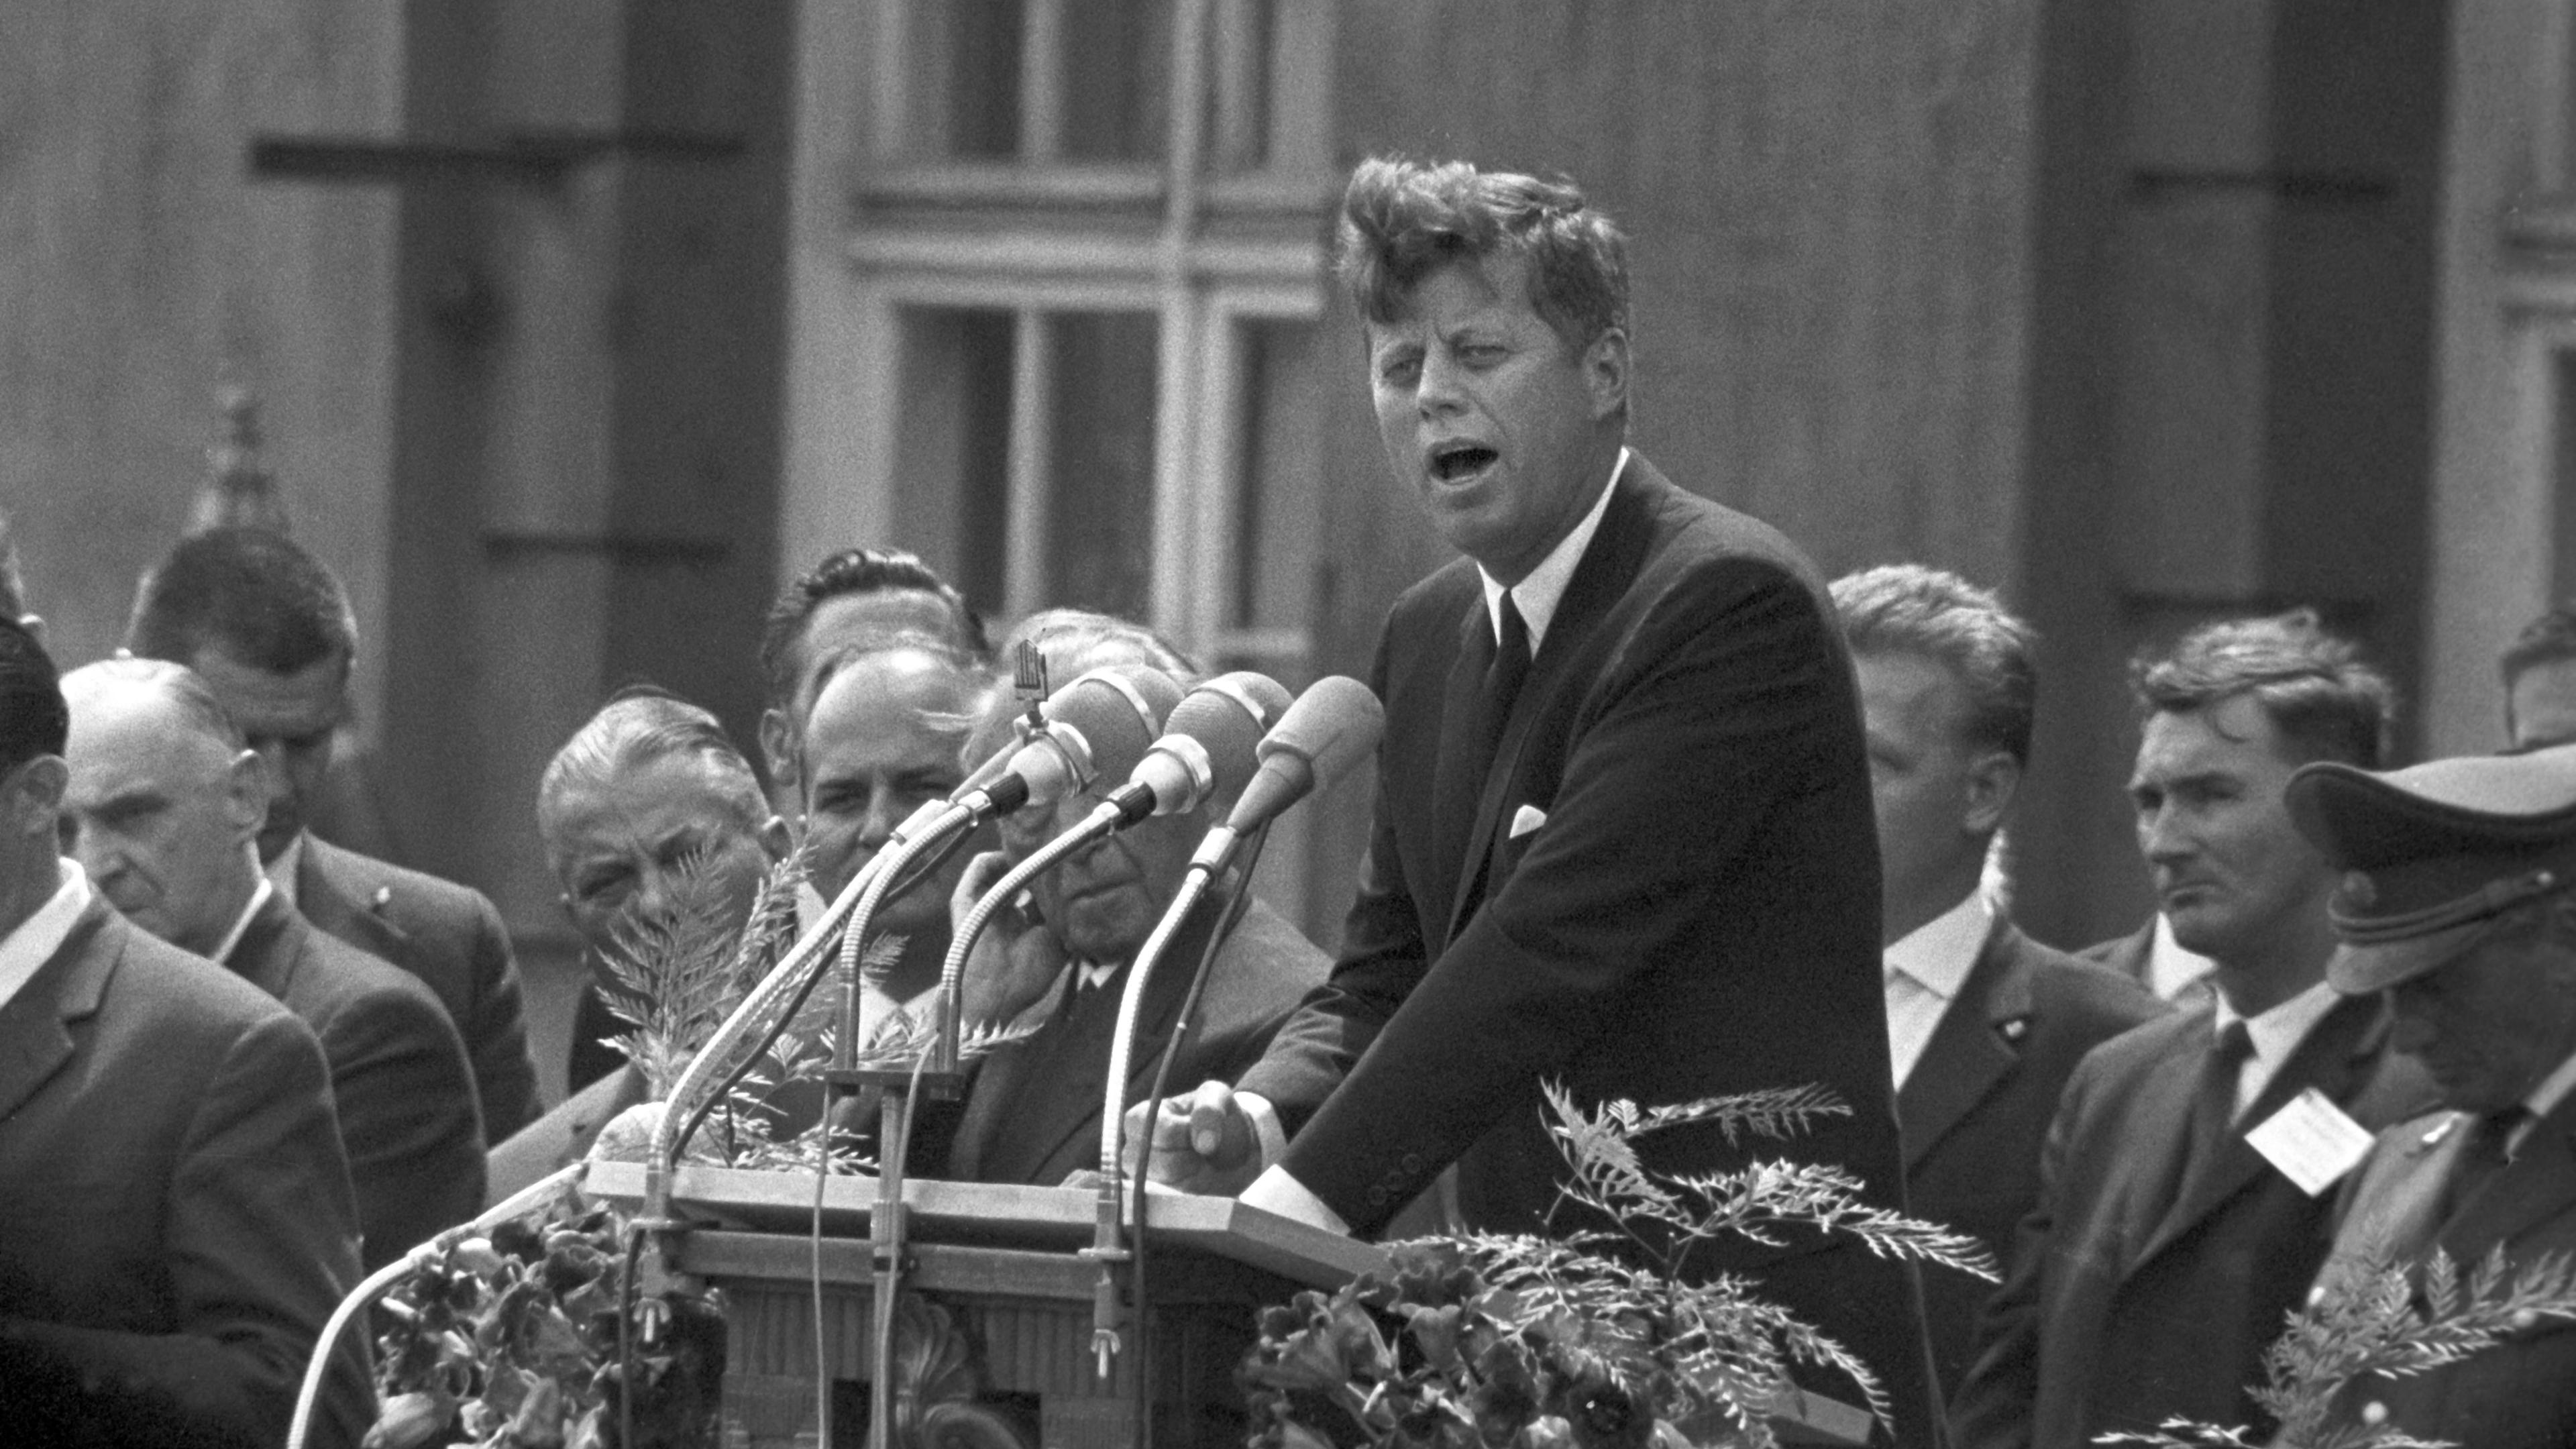 Der damalige US-Präsident John F. Kennedy bei seiner historischen Rede am 26.06.1963 vor dem Rathaus Schöneberg in Berlin. 